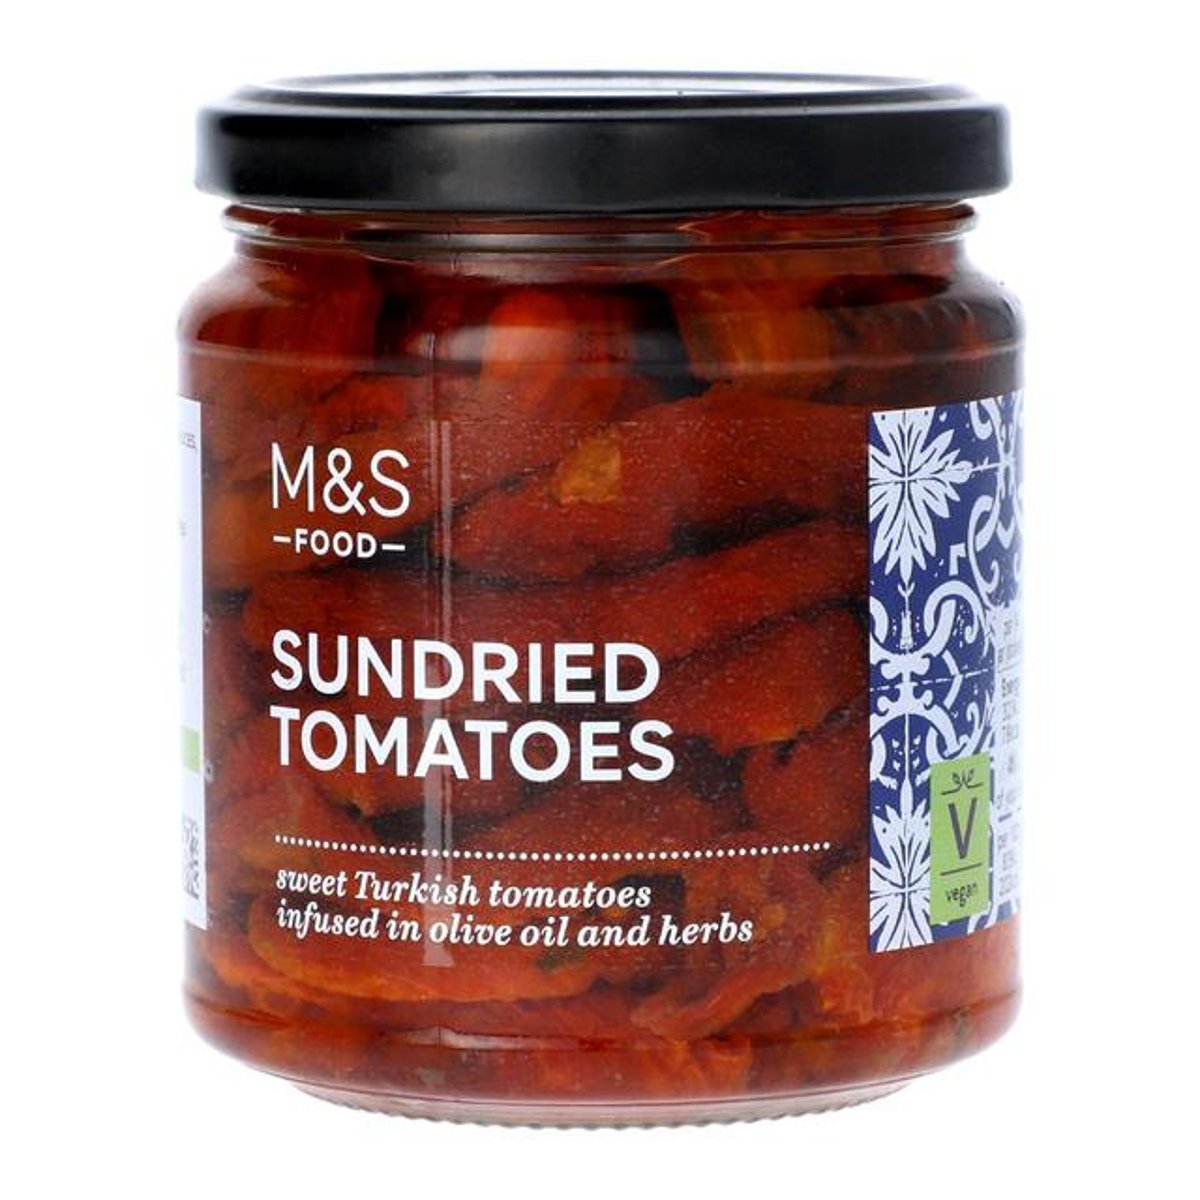 Marks & Spencer Sušená rajčata nakládaná v olivovém oleji (43%) s česnekem a bylinkami